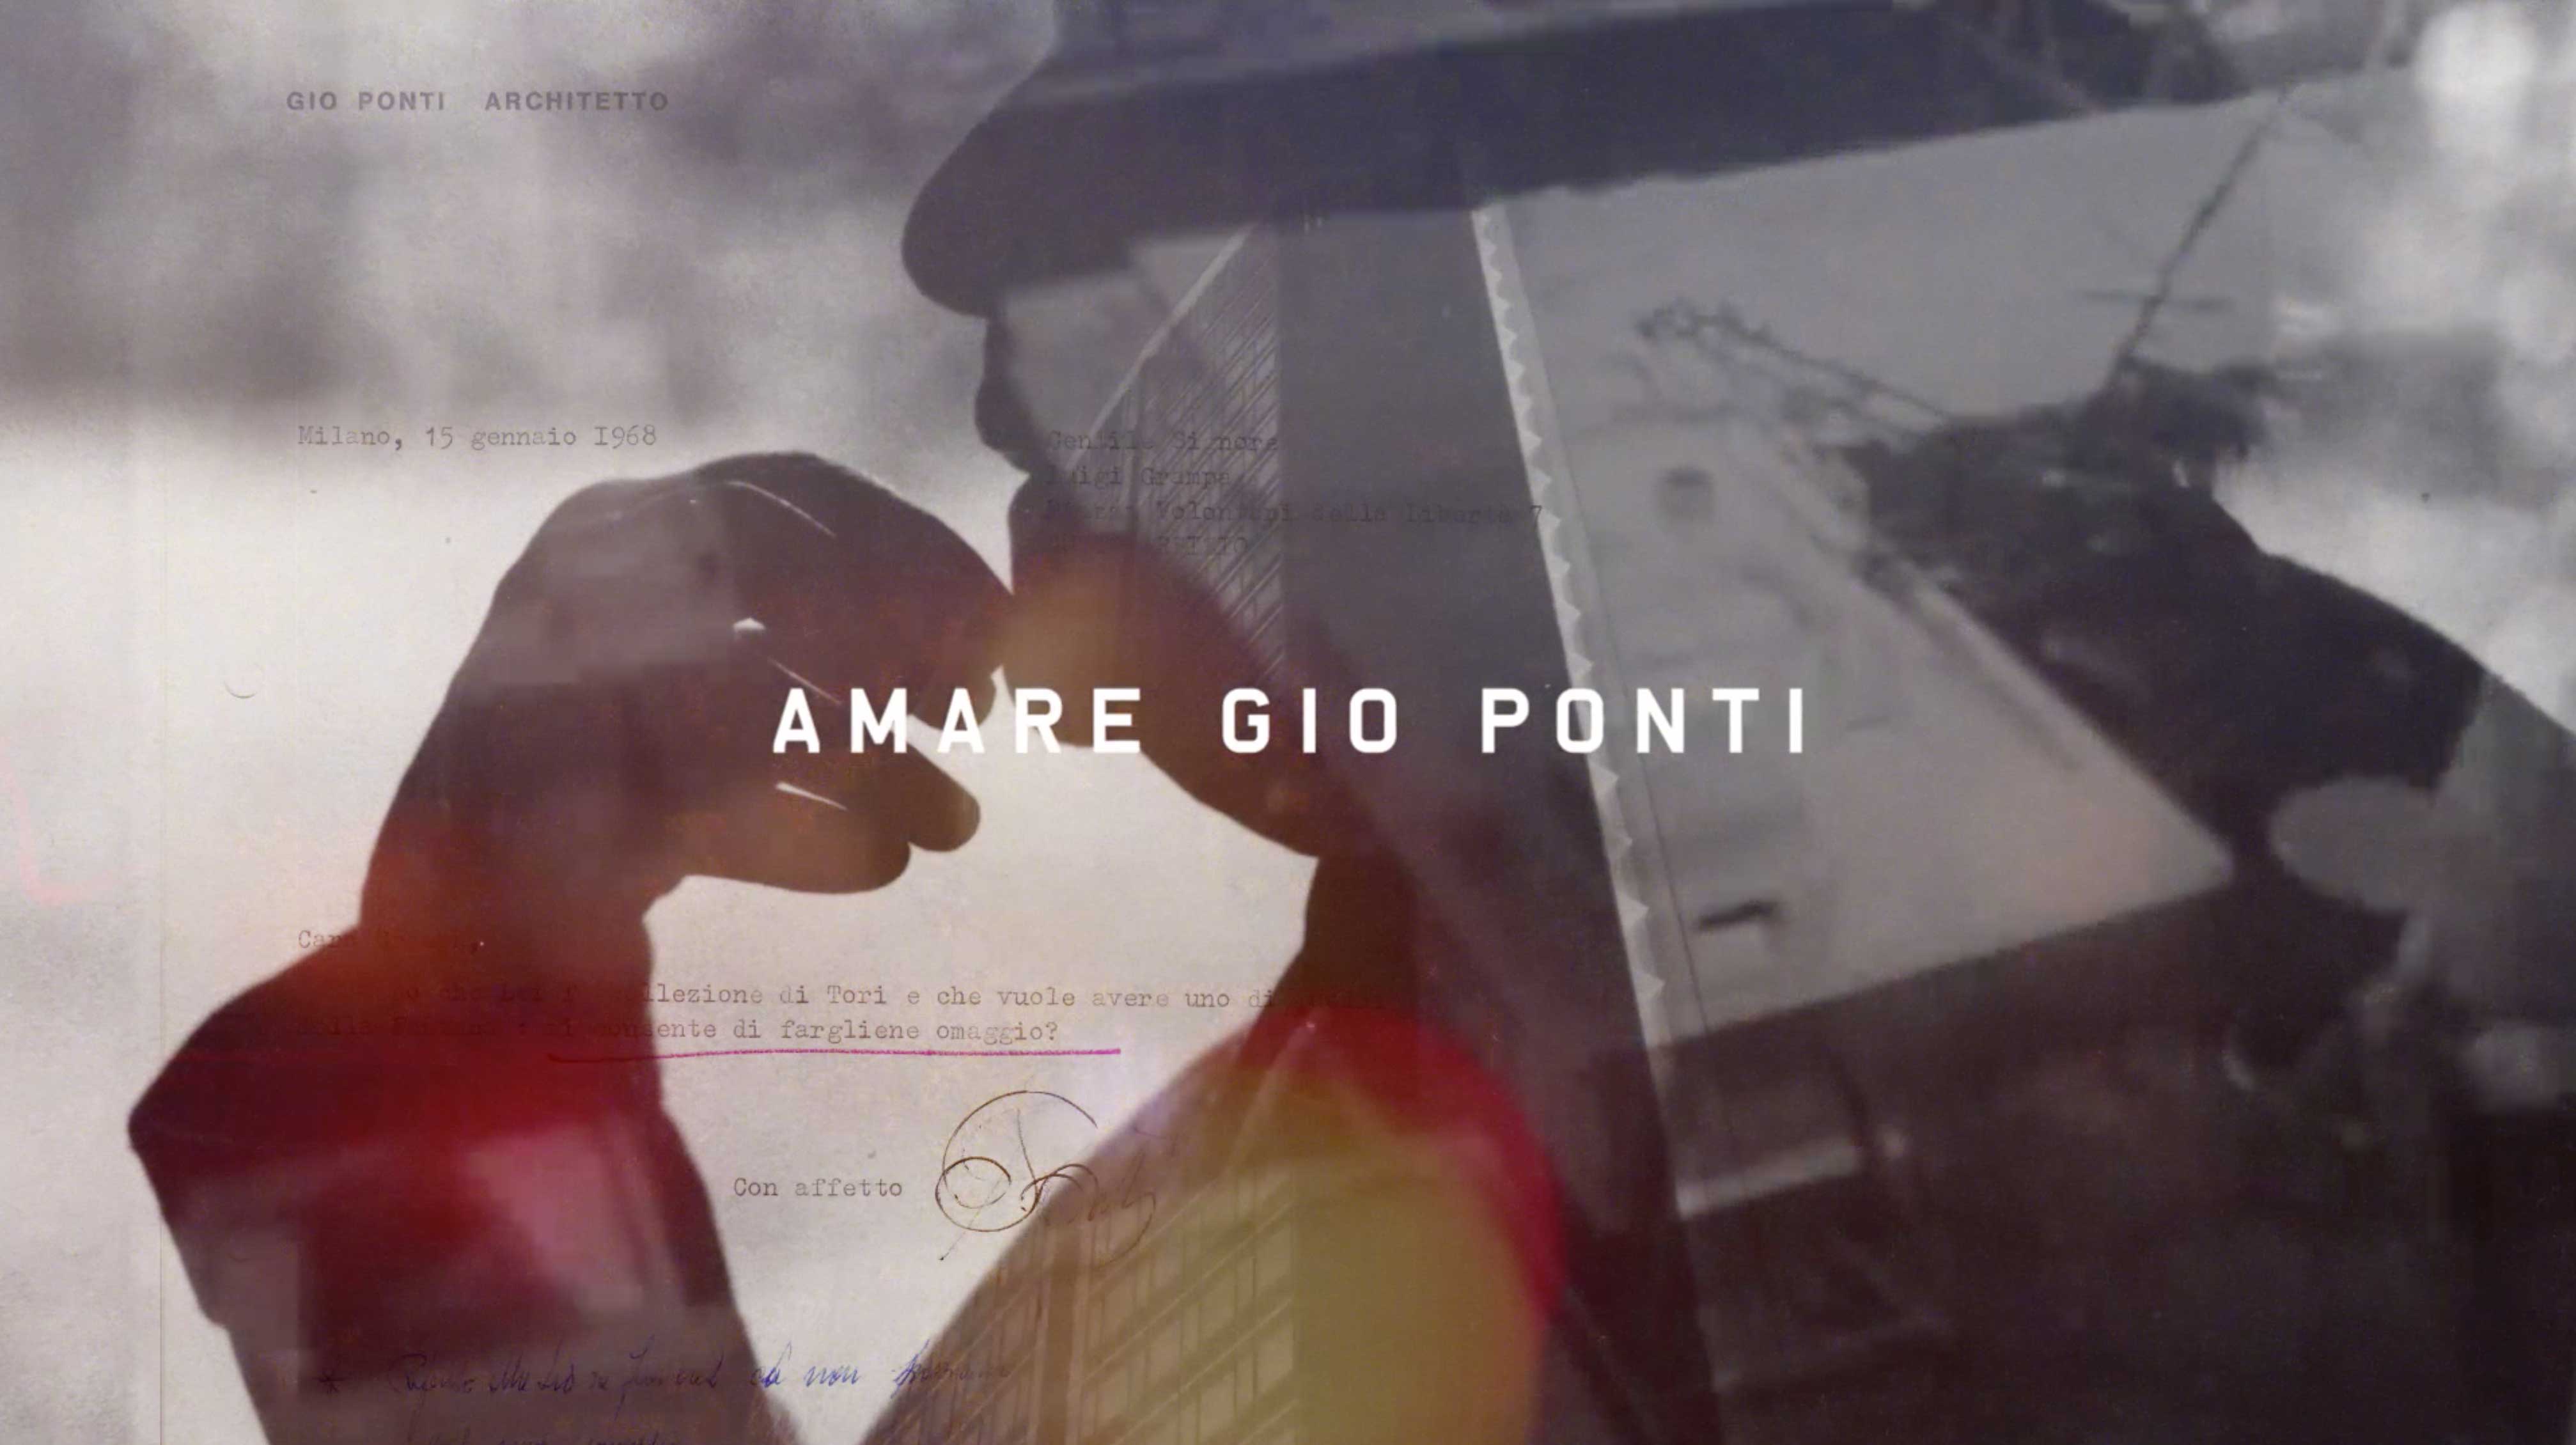 Biennale di Architettura Venezia - Molteni&C presenta “Amare Gio Ponti”